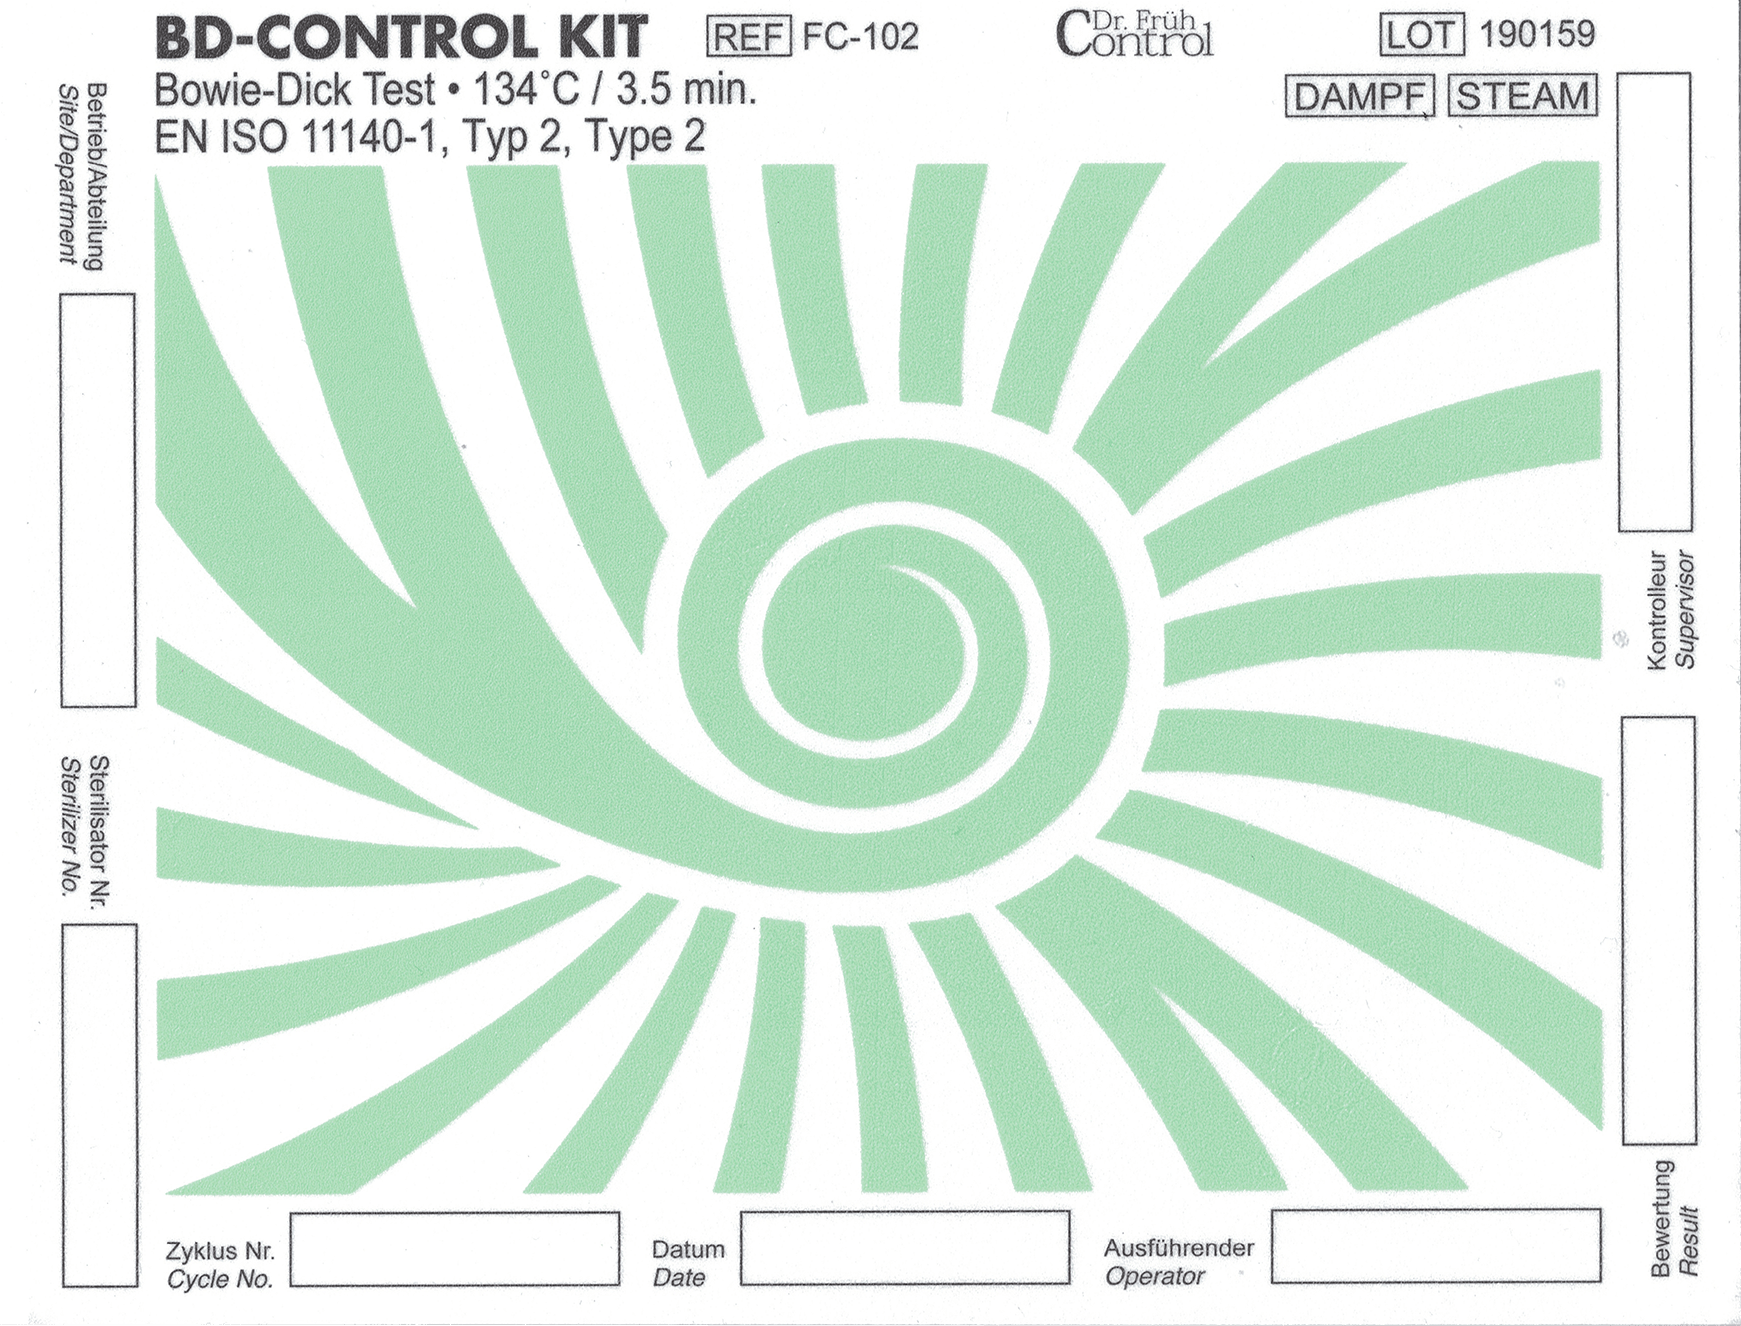 BD-CONTROL KIT Indikator vor Gebrauch